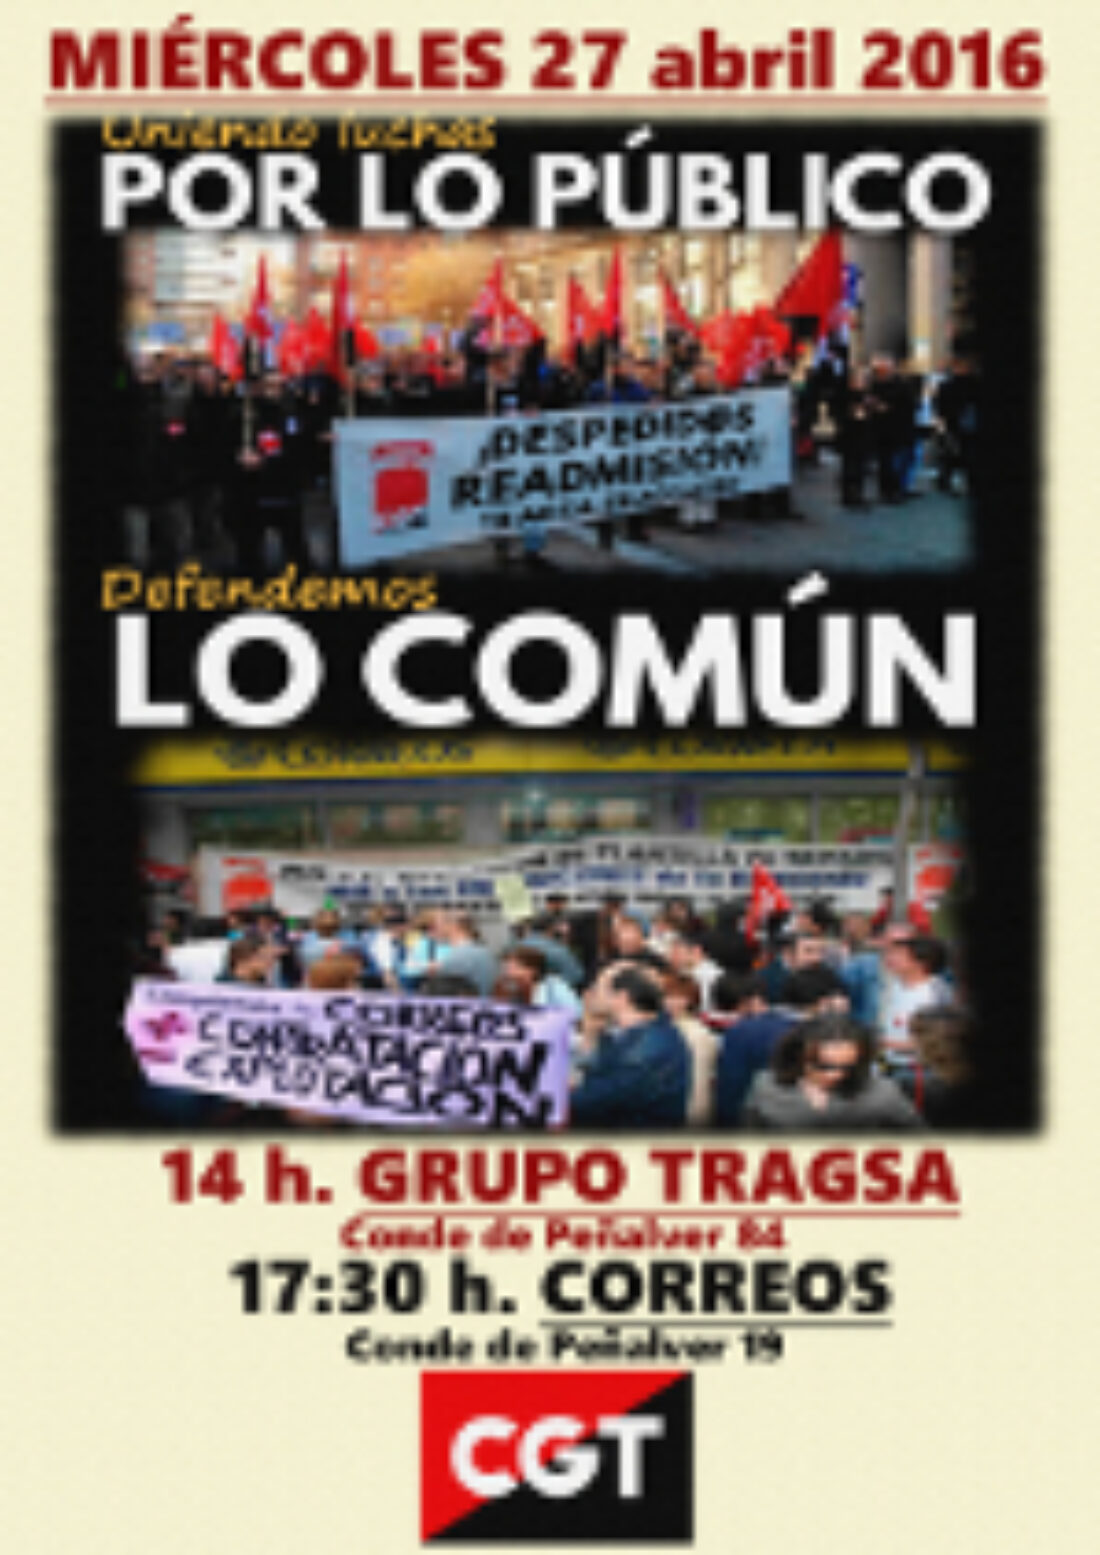 Concentración: Uniendo luchas por lo Público, defendemos lo común ¡DESPEDID@S READMISIÓN!